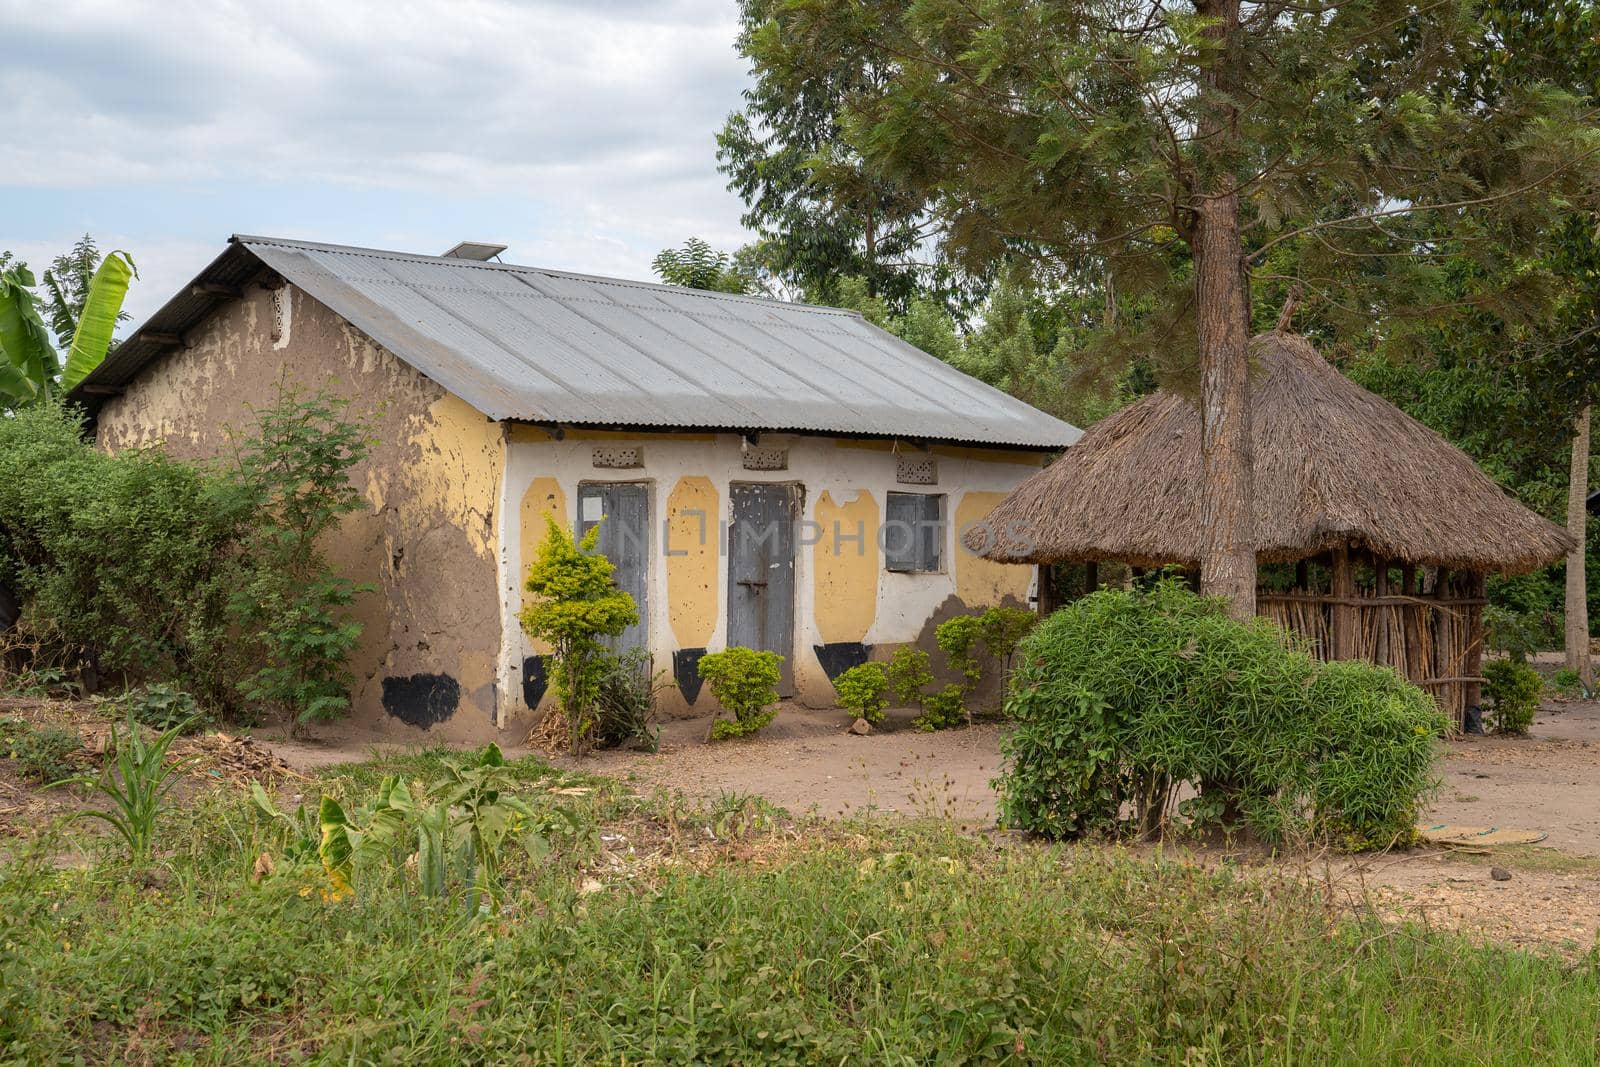 Village, Uganda, East Africa by alfotokunst